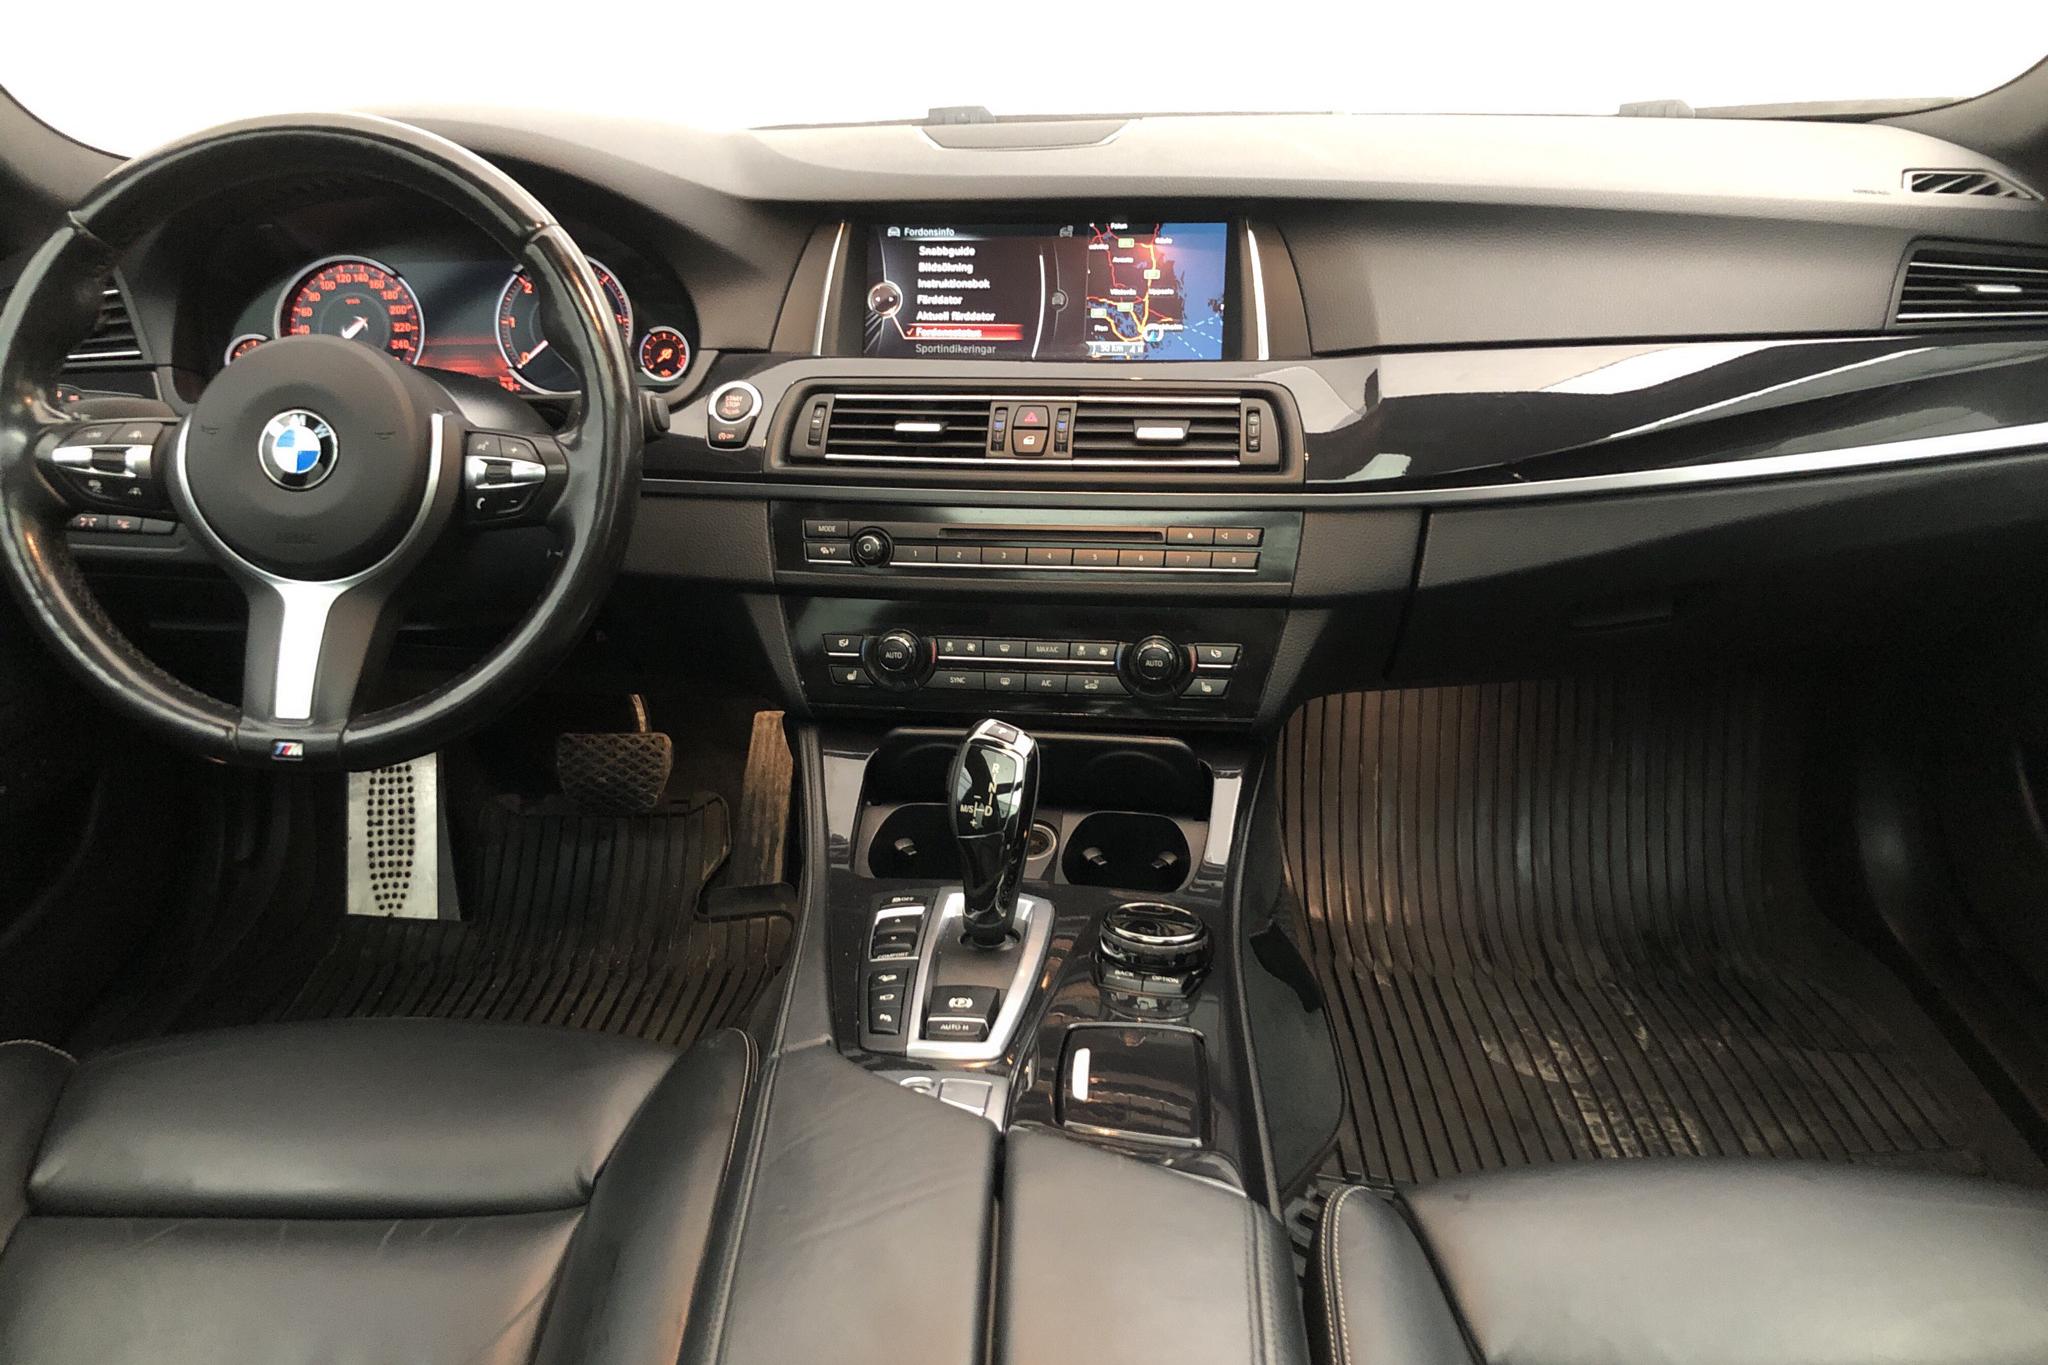 BMW 535d xDrive Touring, F11 (313hk) - 150 670 km - Automatic - silver - 2016